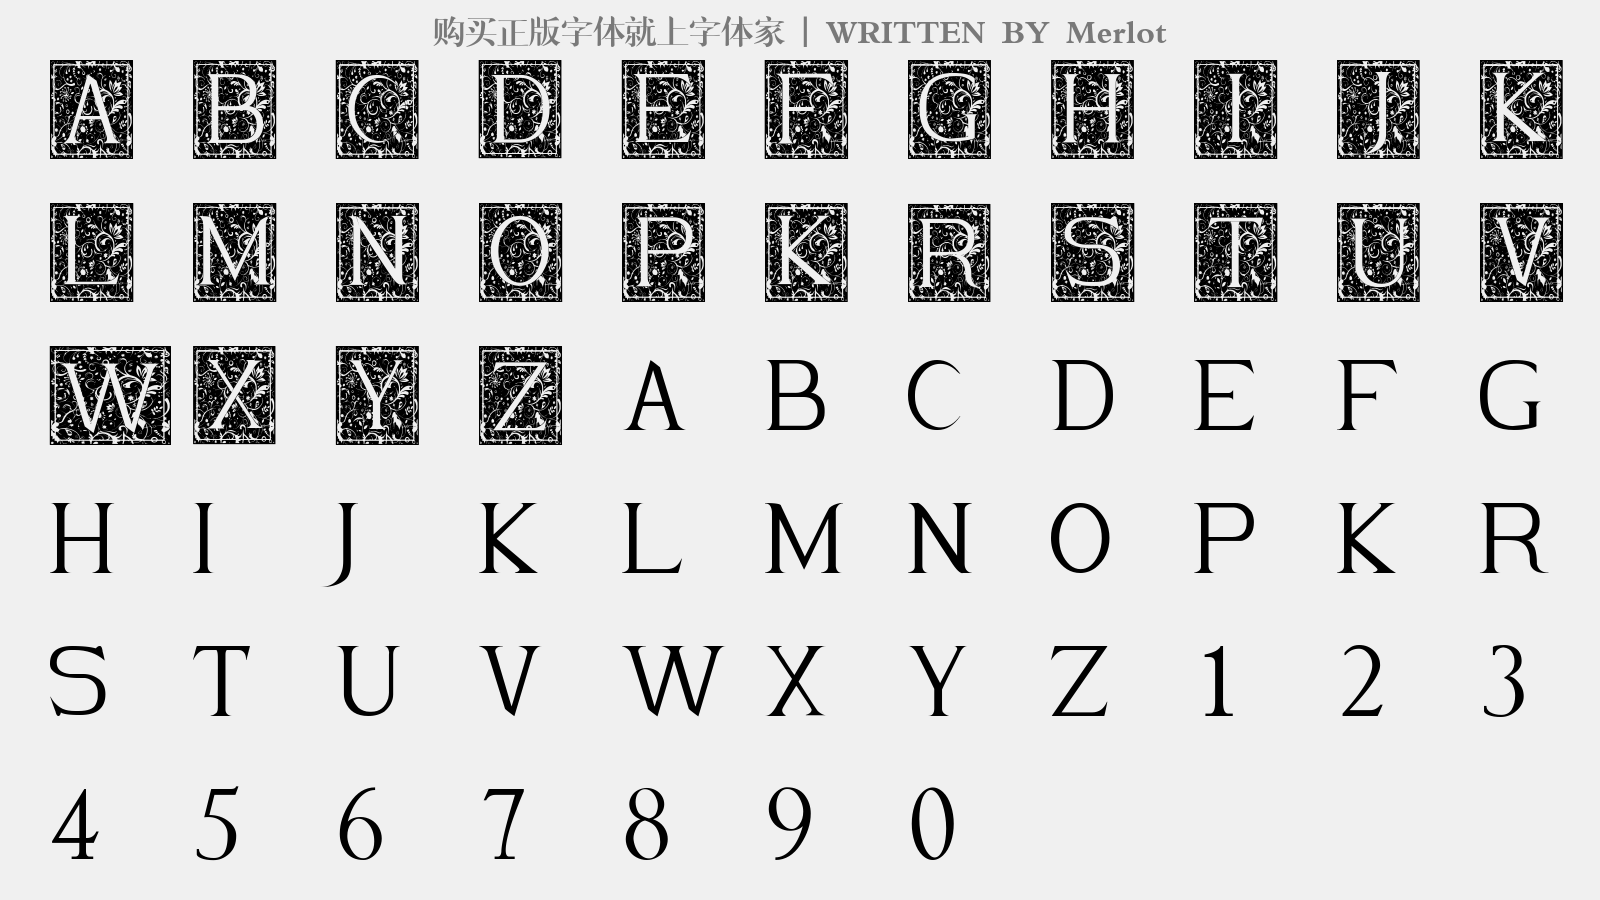 Merlot - 大写字母/小写字母/数字